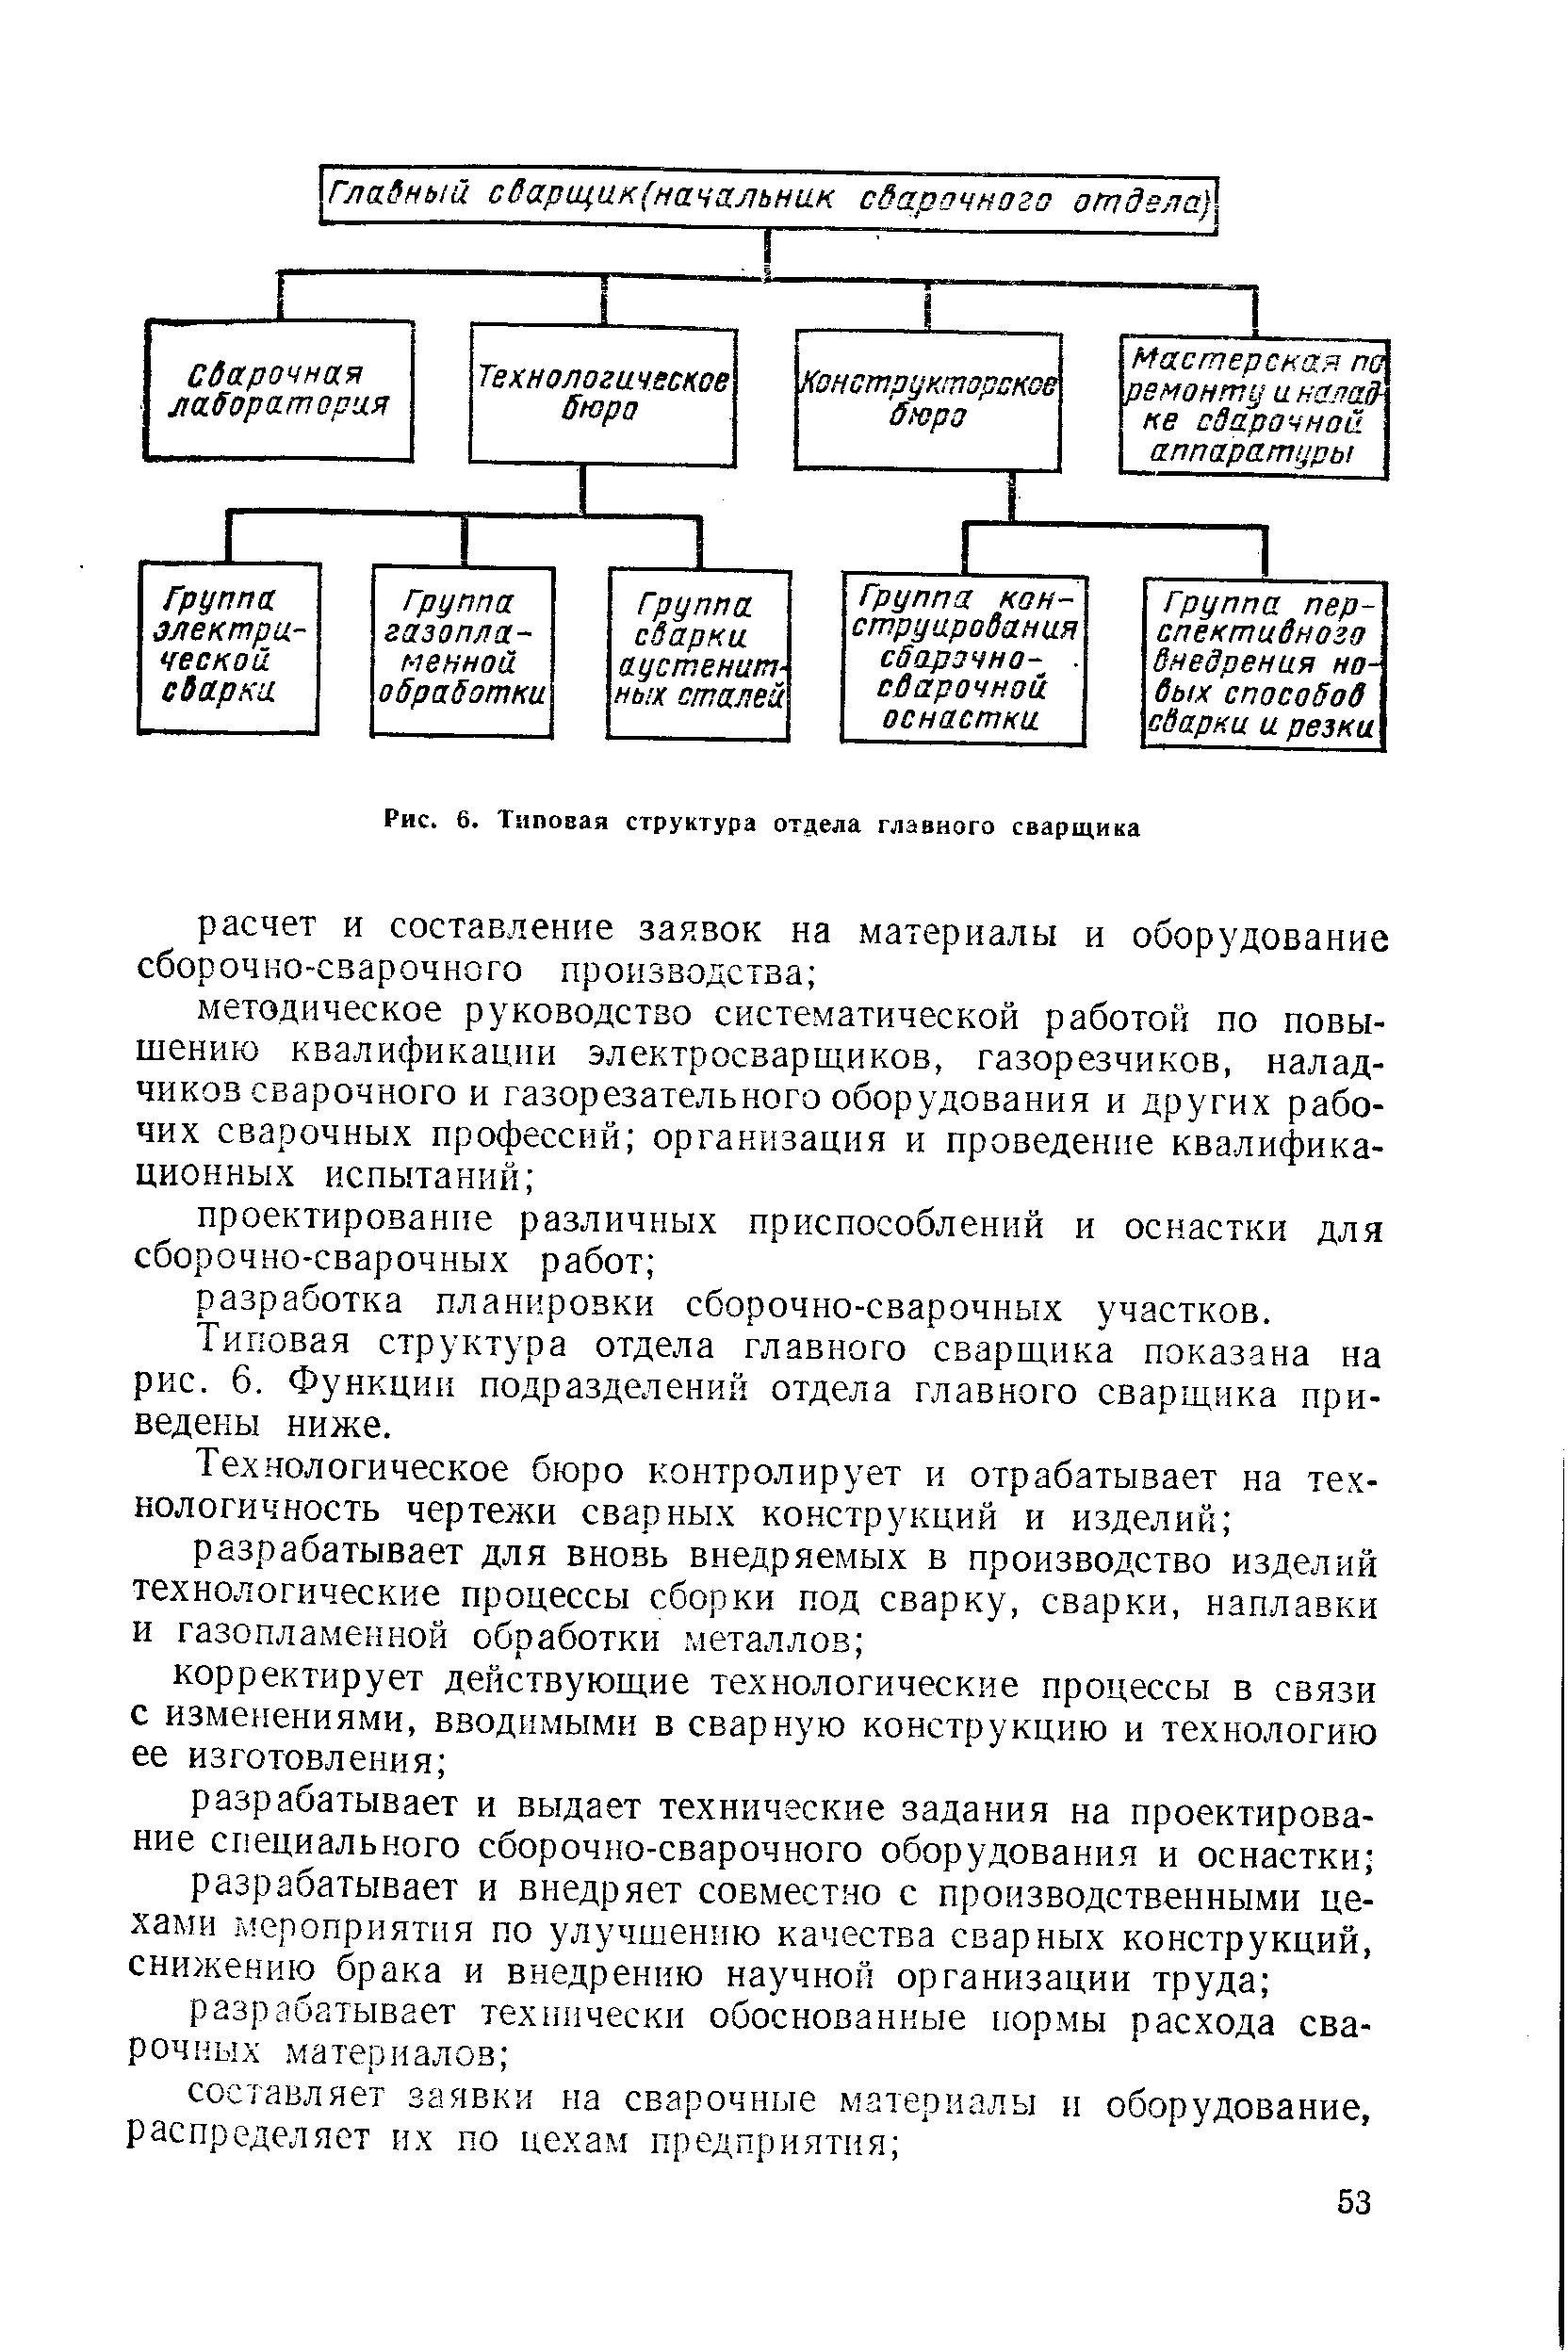 Рис. 6. Типовая структура отдела главного сварщика
